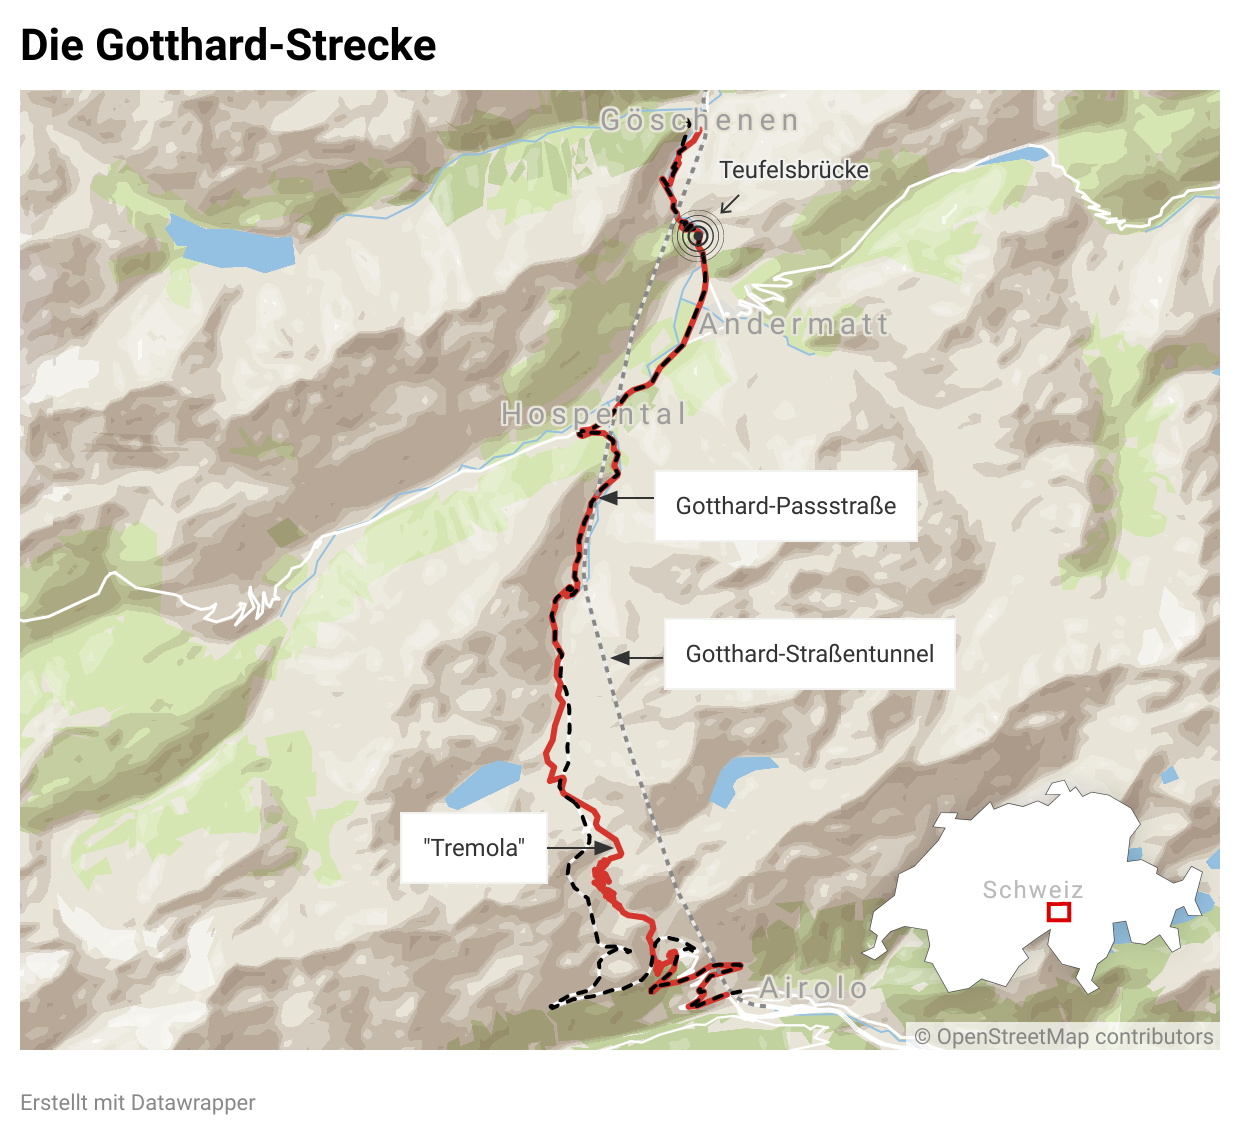 Schweiz: Der Gotthardpass mit Tremolastraße und Gotthard-Straßentunnel